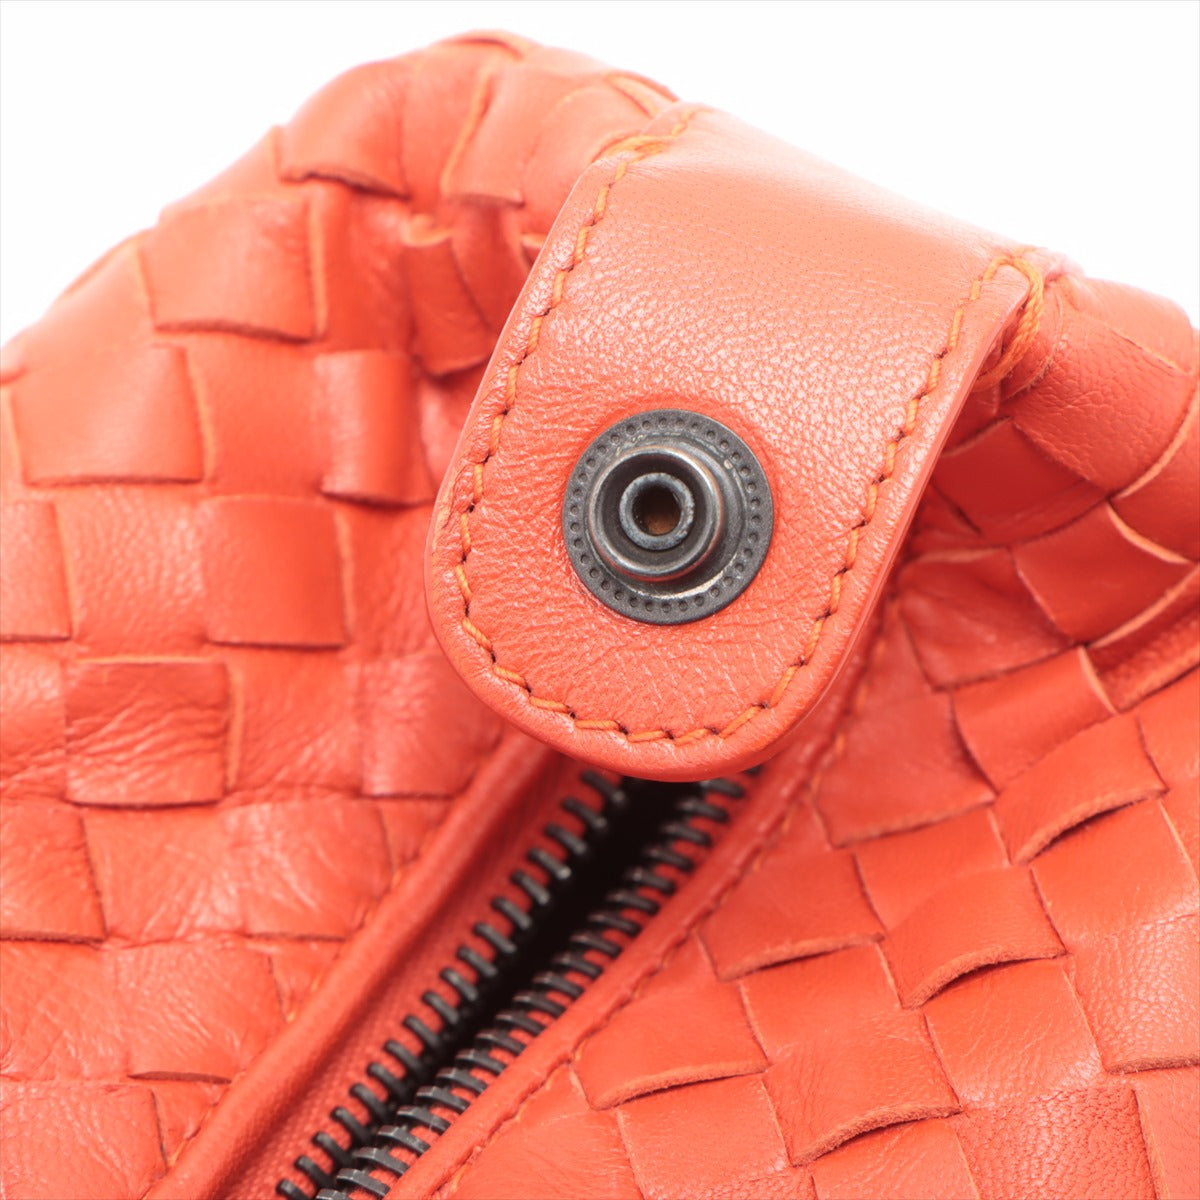 Bottega Veneta Intrecciato Leather Handbag Red 114087